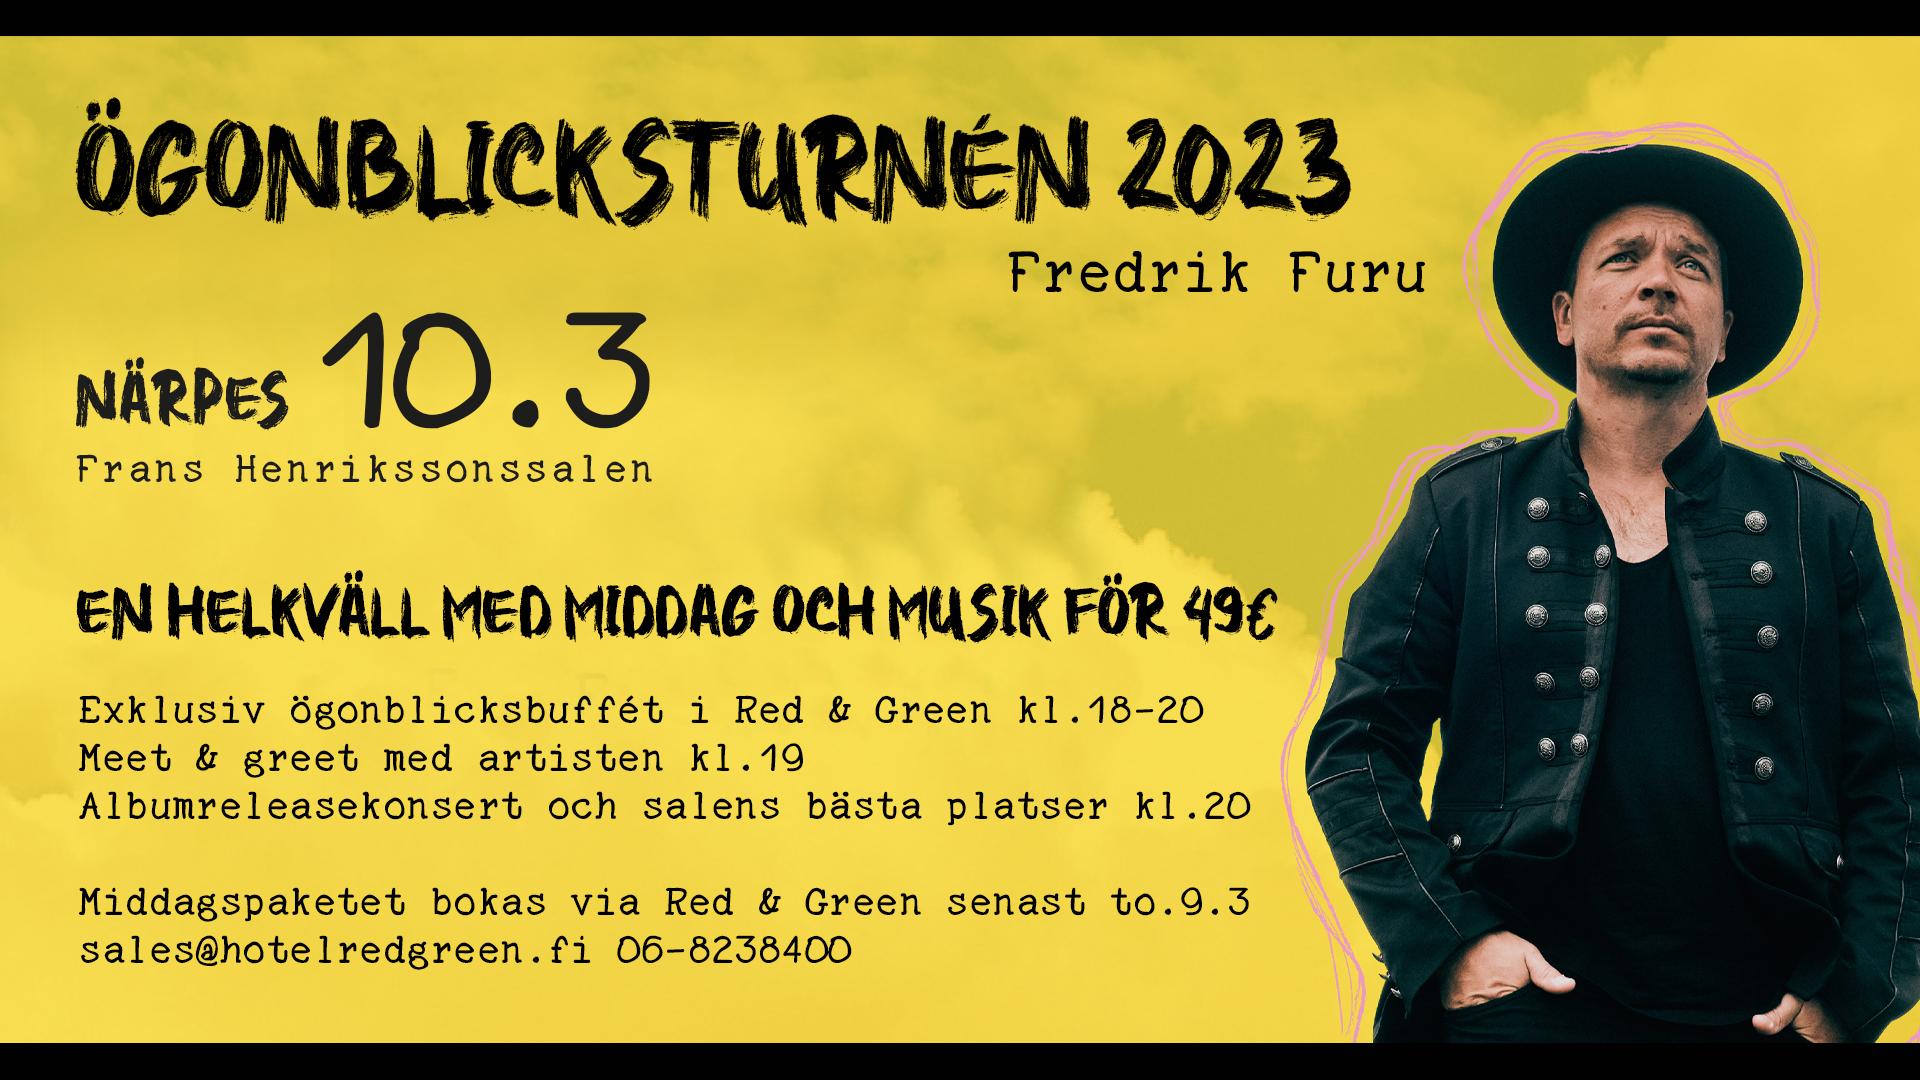 Fredrik Furu releasekonsert & middag Hotel Red & Green Närpes 10.3